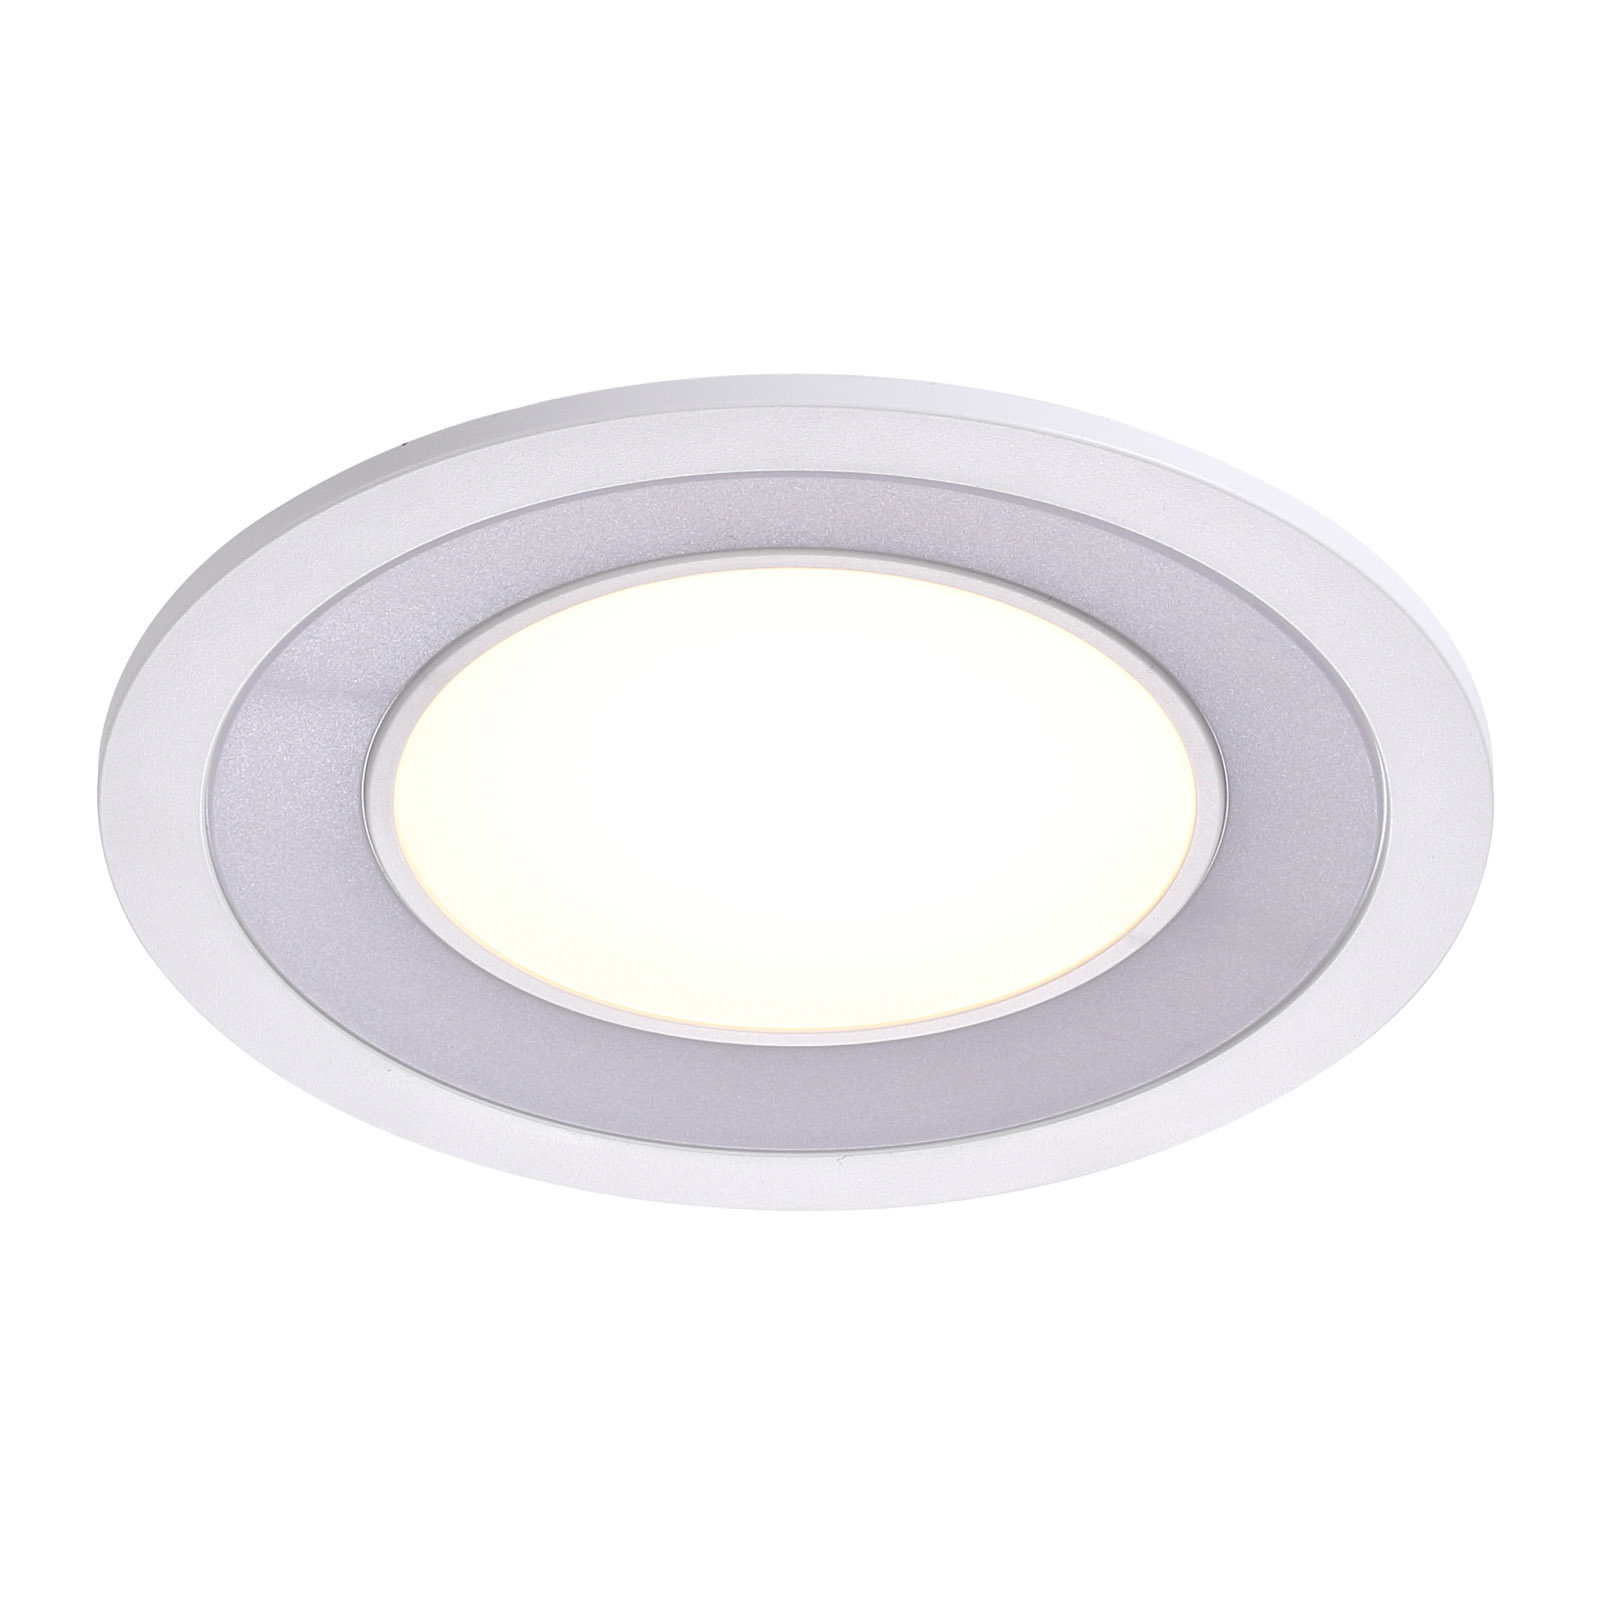 LED podhledové svítidlo Clyde, teplá bílá, Ø 15 cm